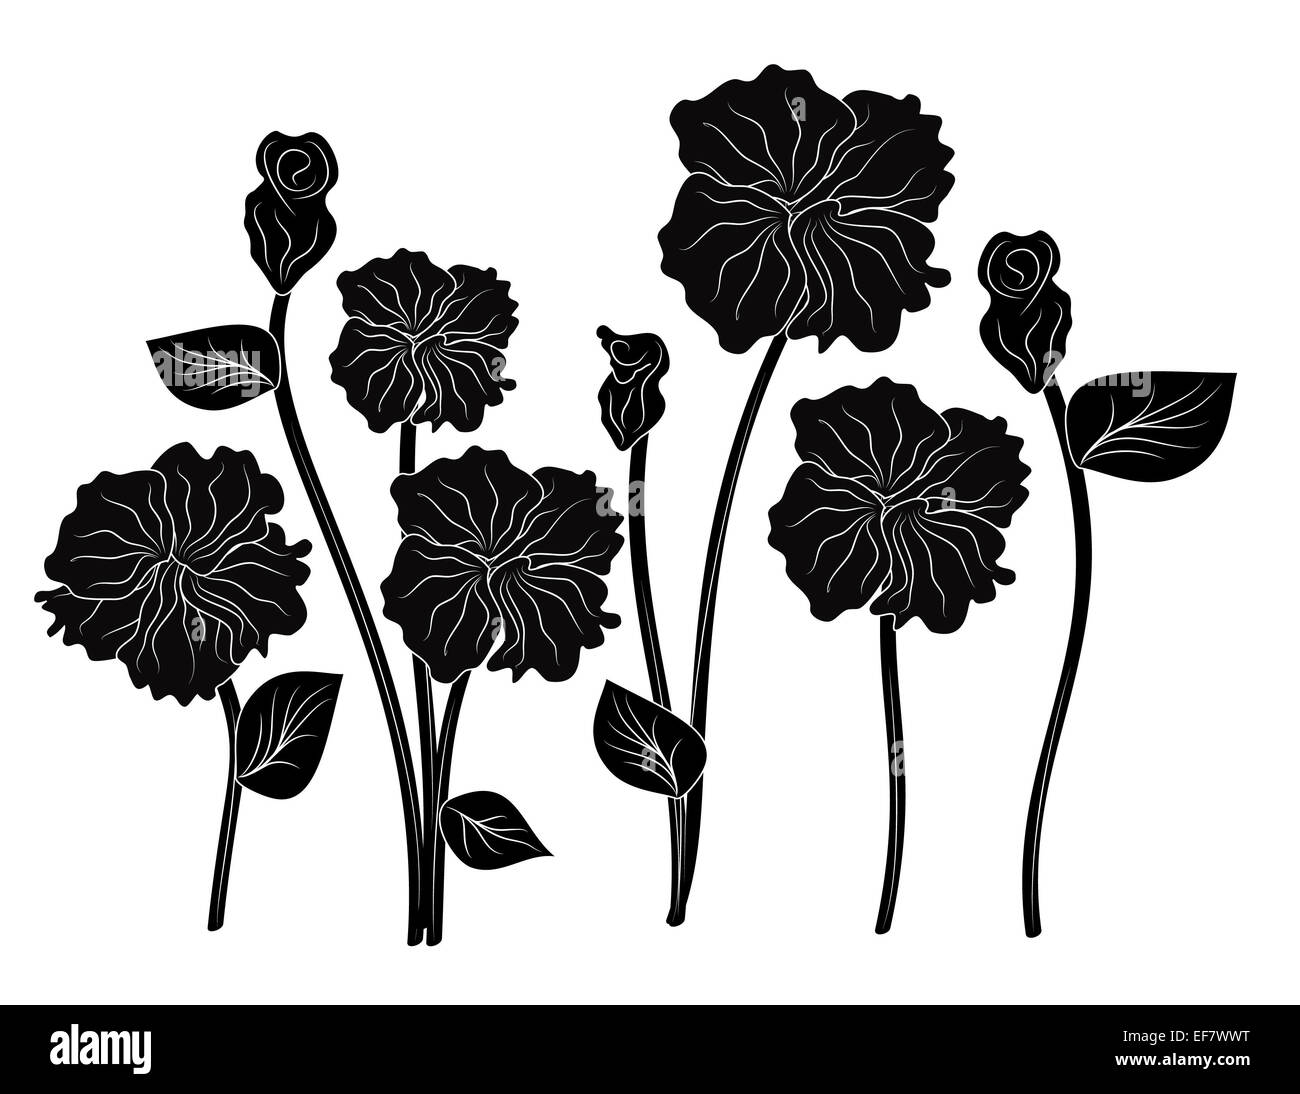 Romantische schwarz-weiß-Abbildung acht elegante Blumen für dekorative Zwecke und Liebe Themen Stockfoto